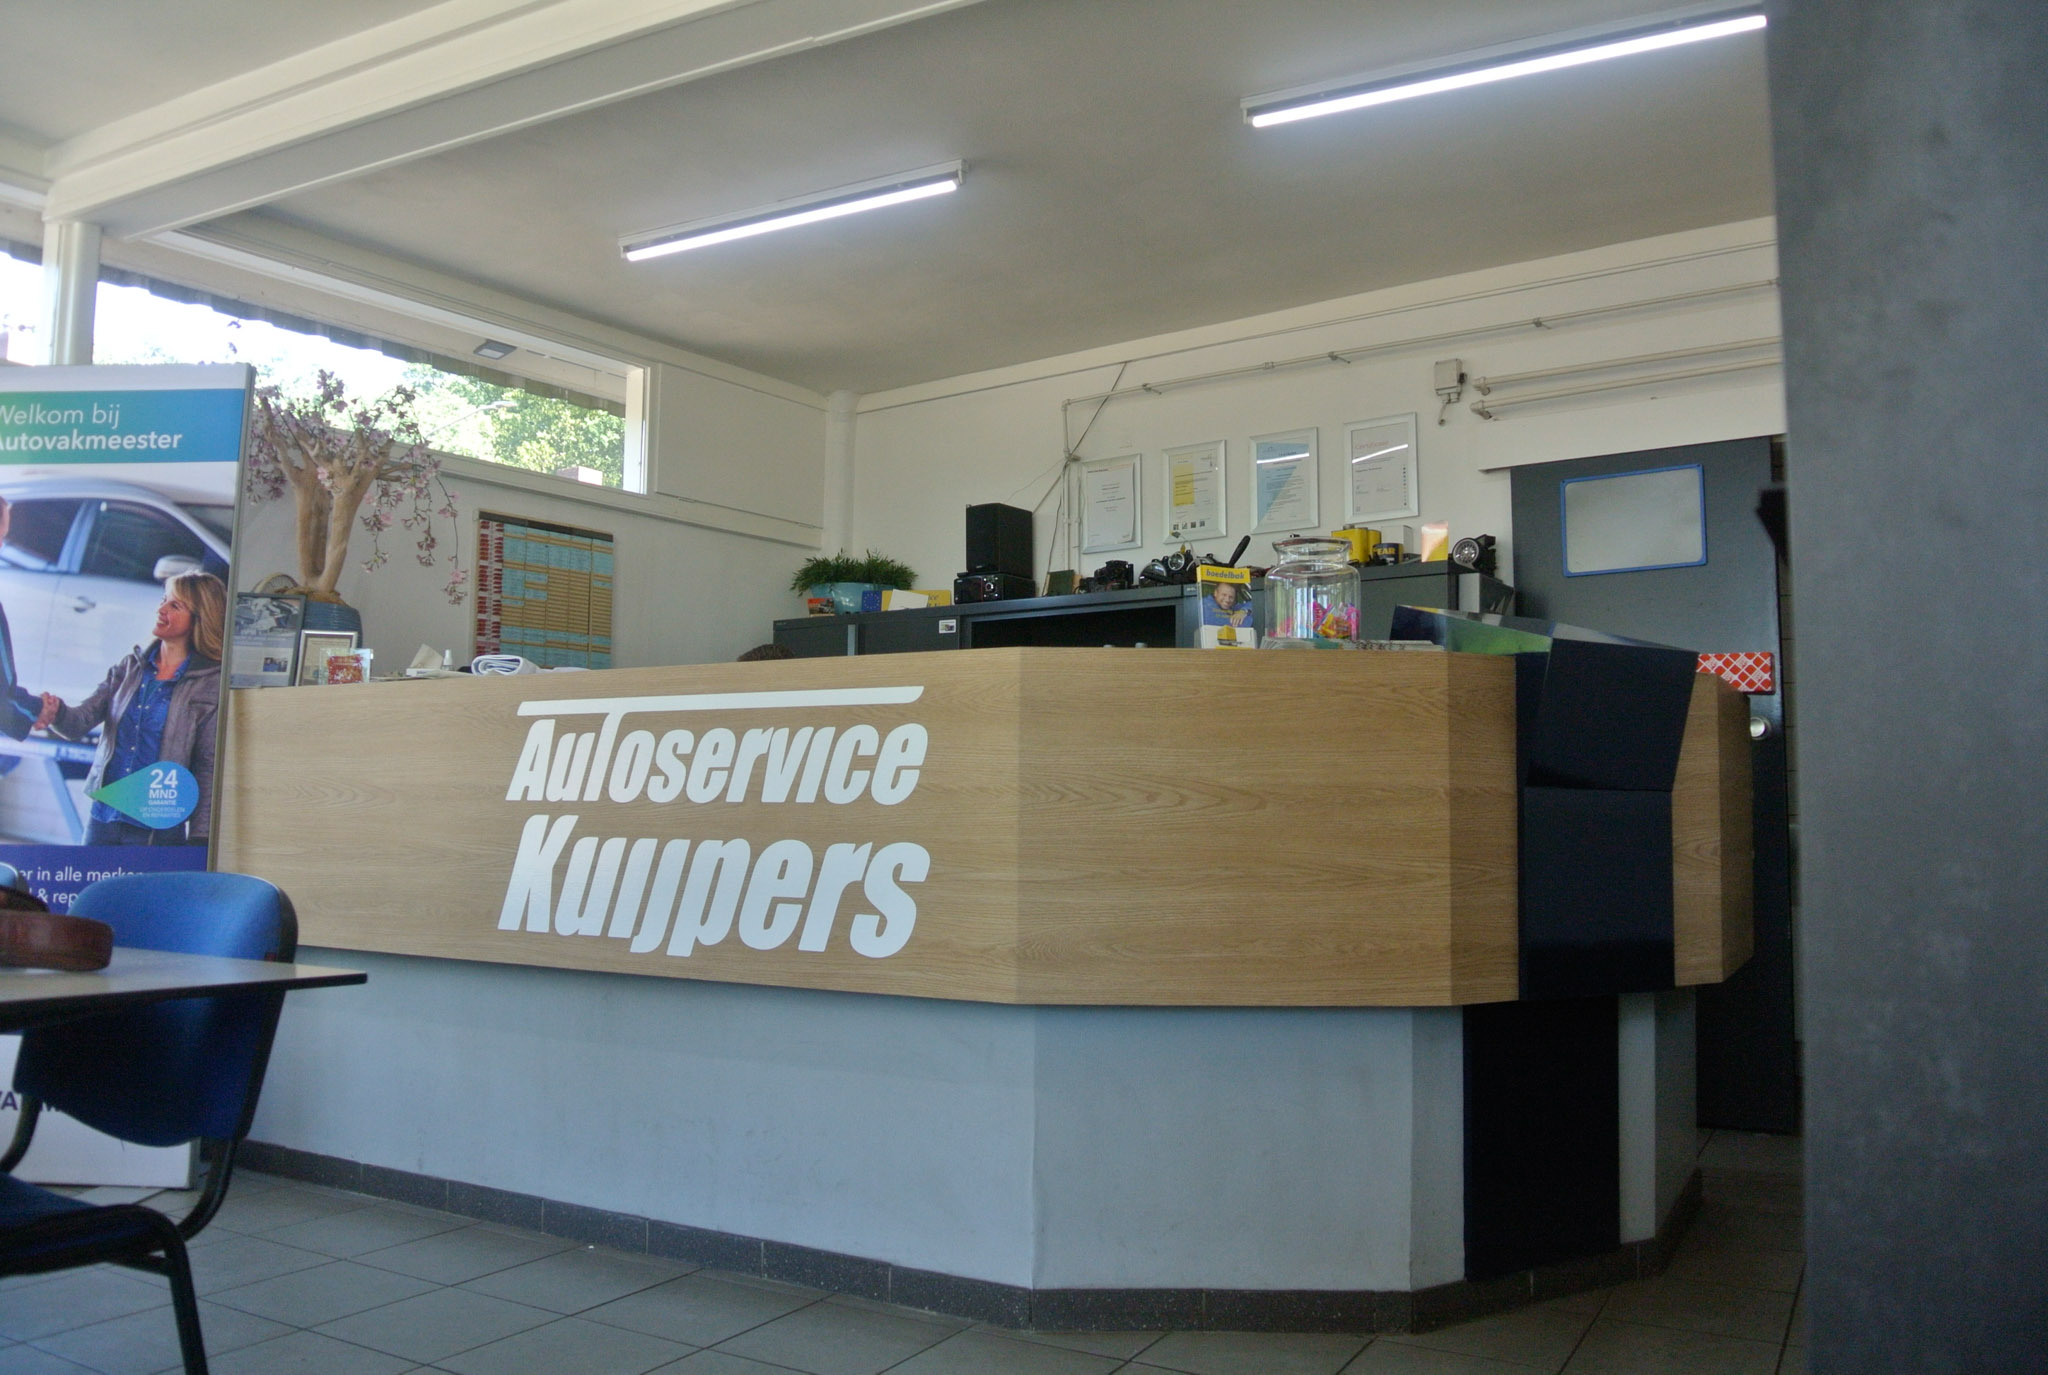 Autovakmeester Autoservice Kuijpers Nijmegen-10